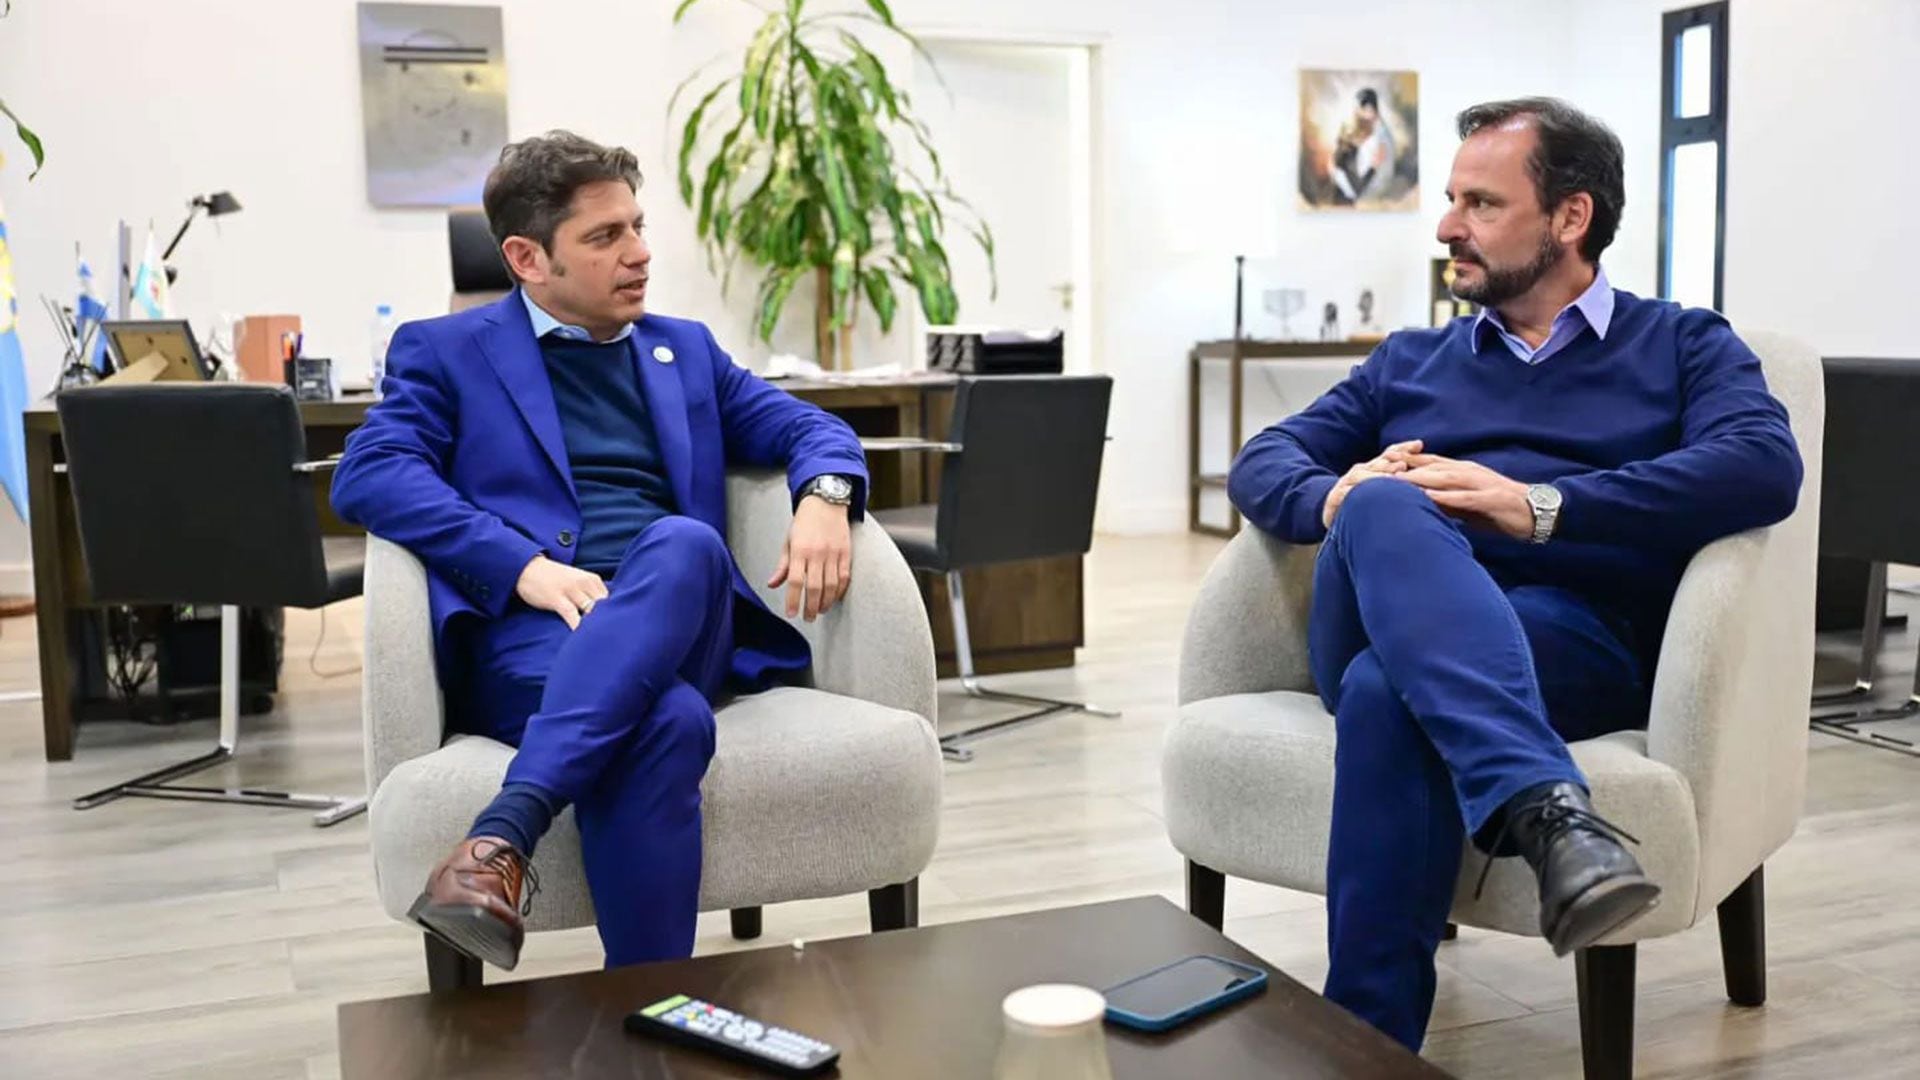 El encuentro entre el gobernador Axel Kicillof y el intendente de Escobar, Ariel Sujarchuk